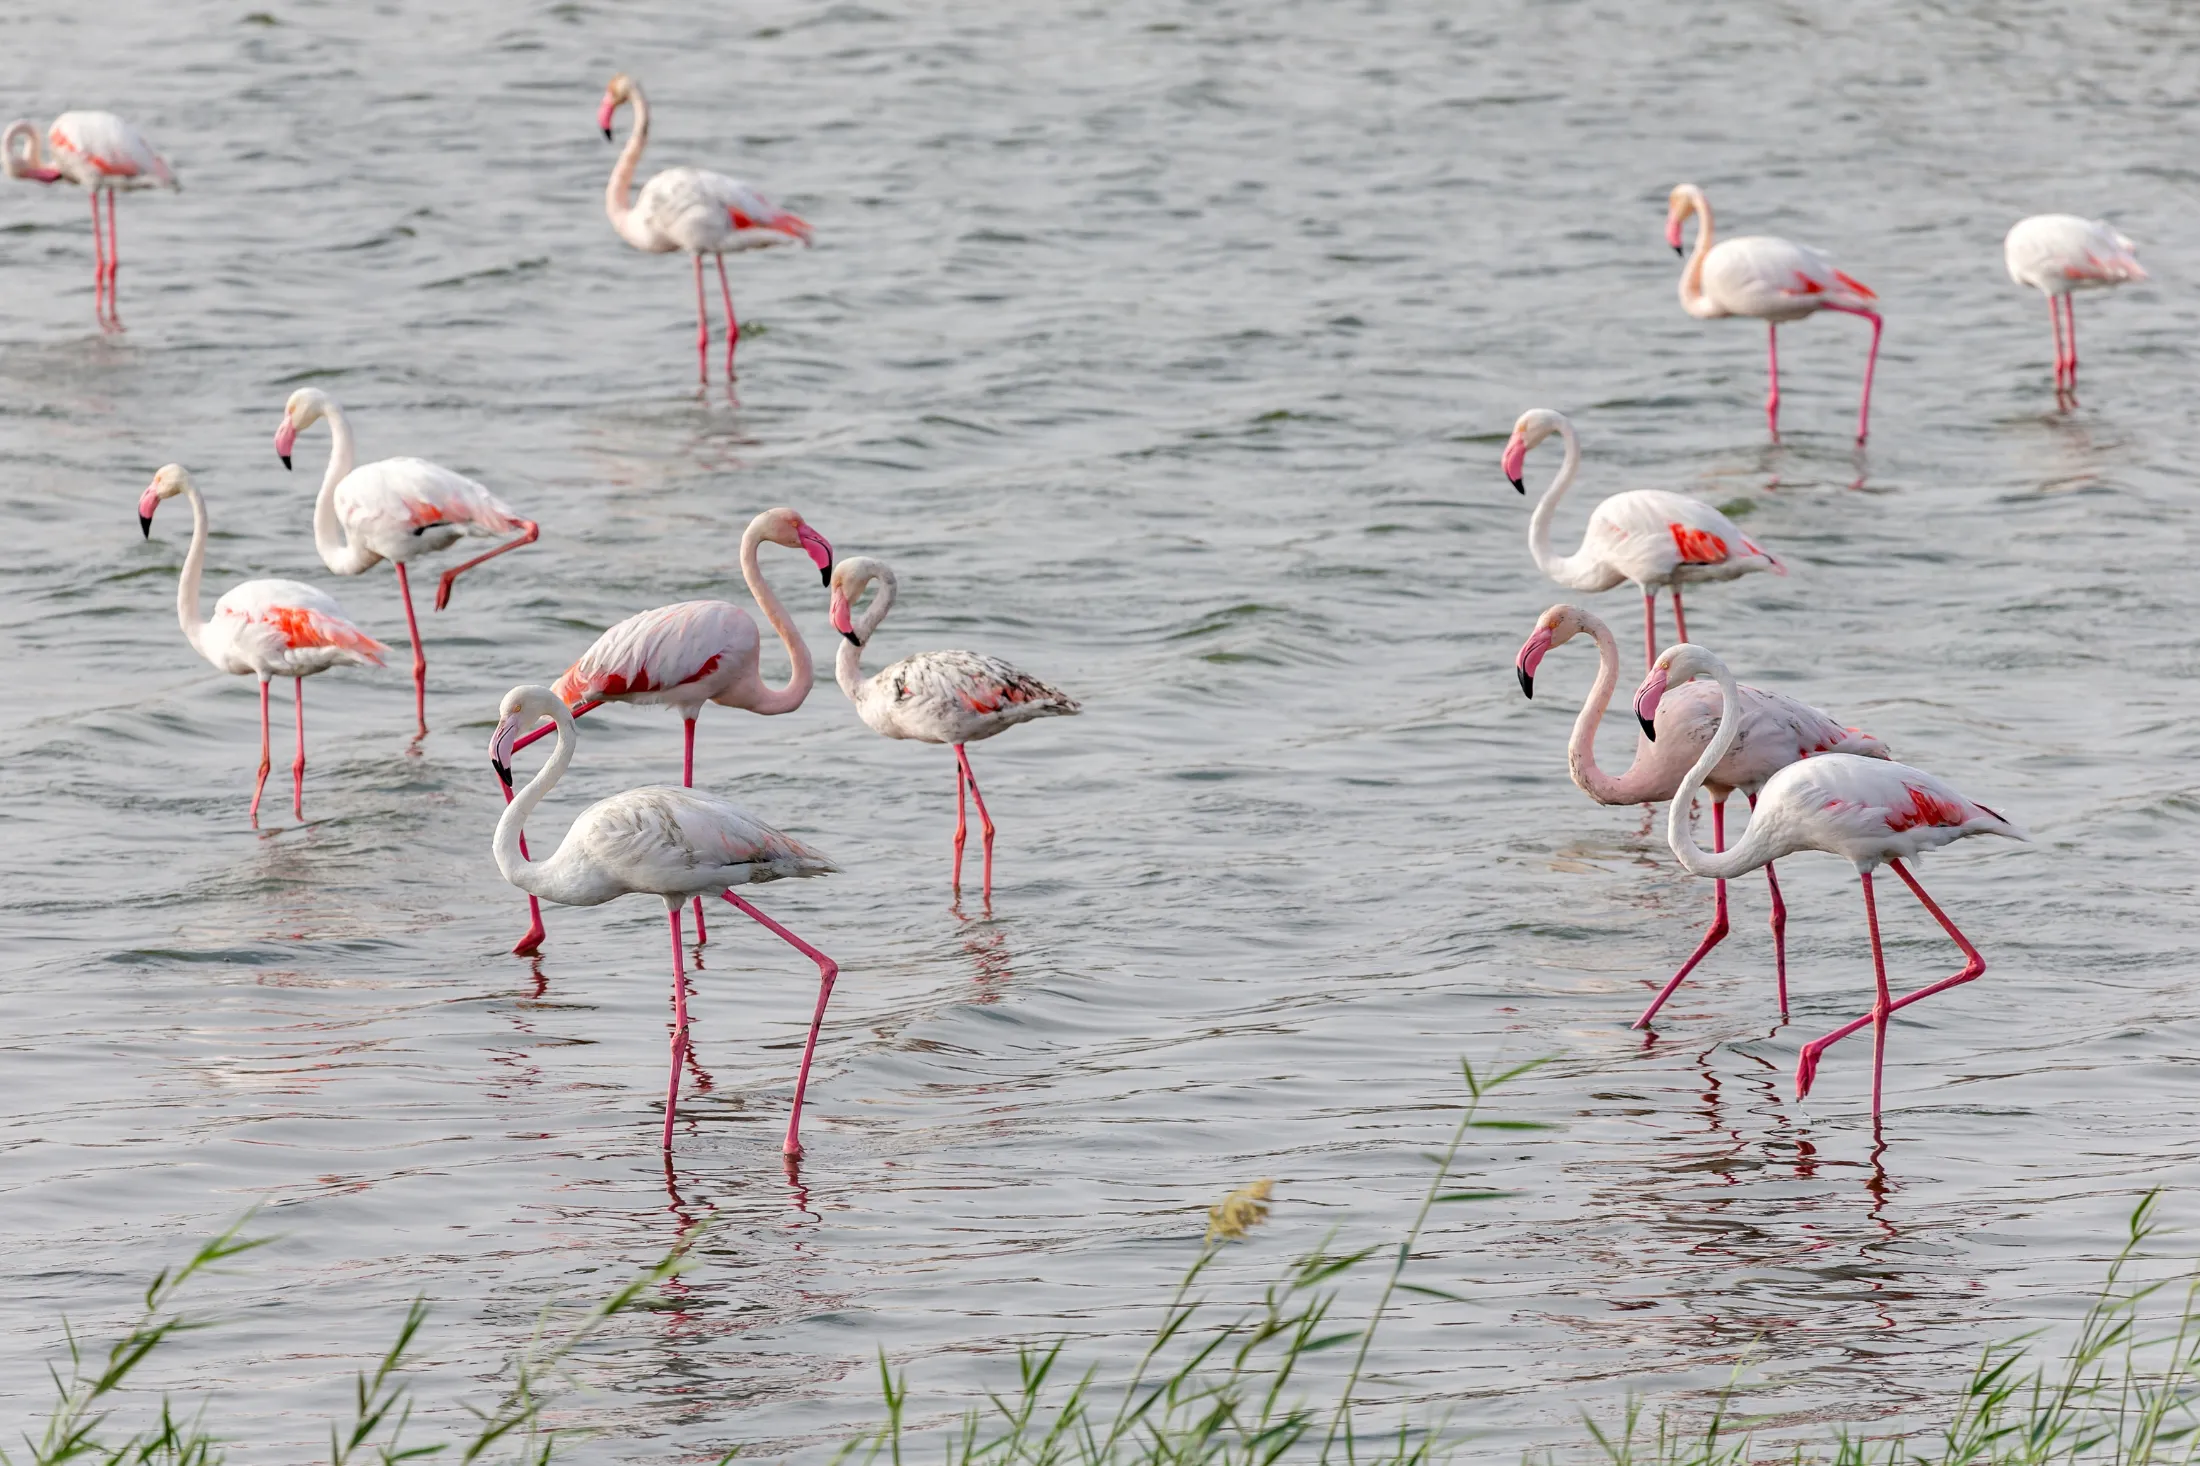 Flamingos in Al Wathba Wetlands.